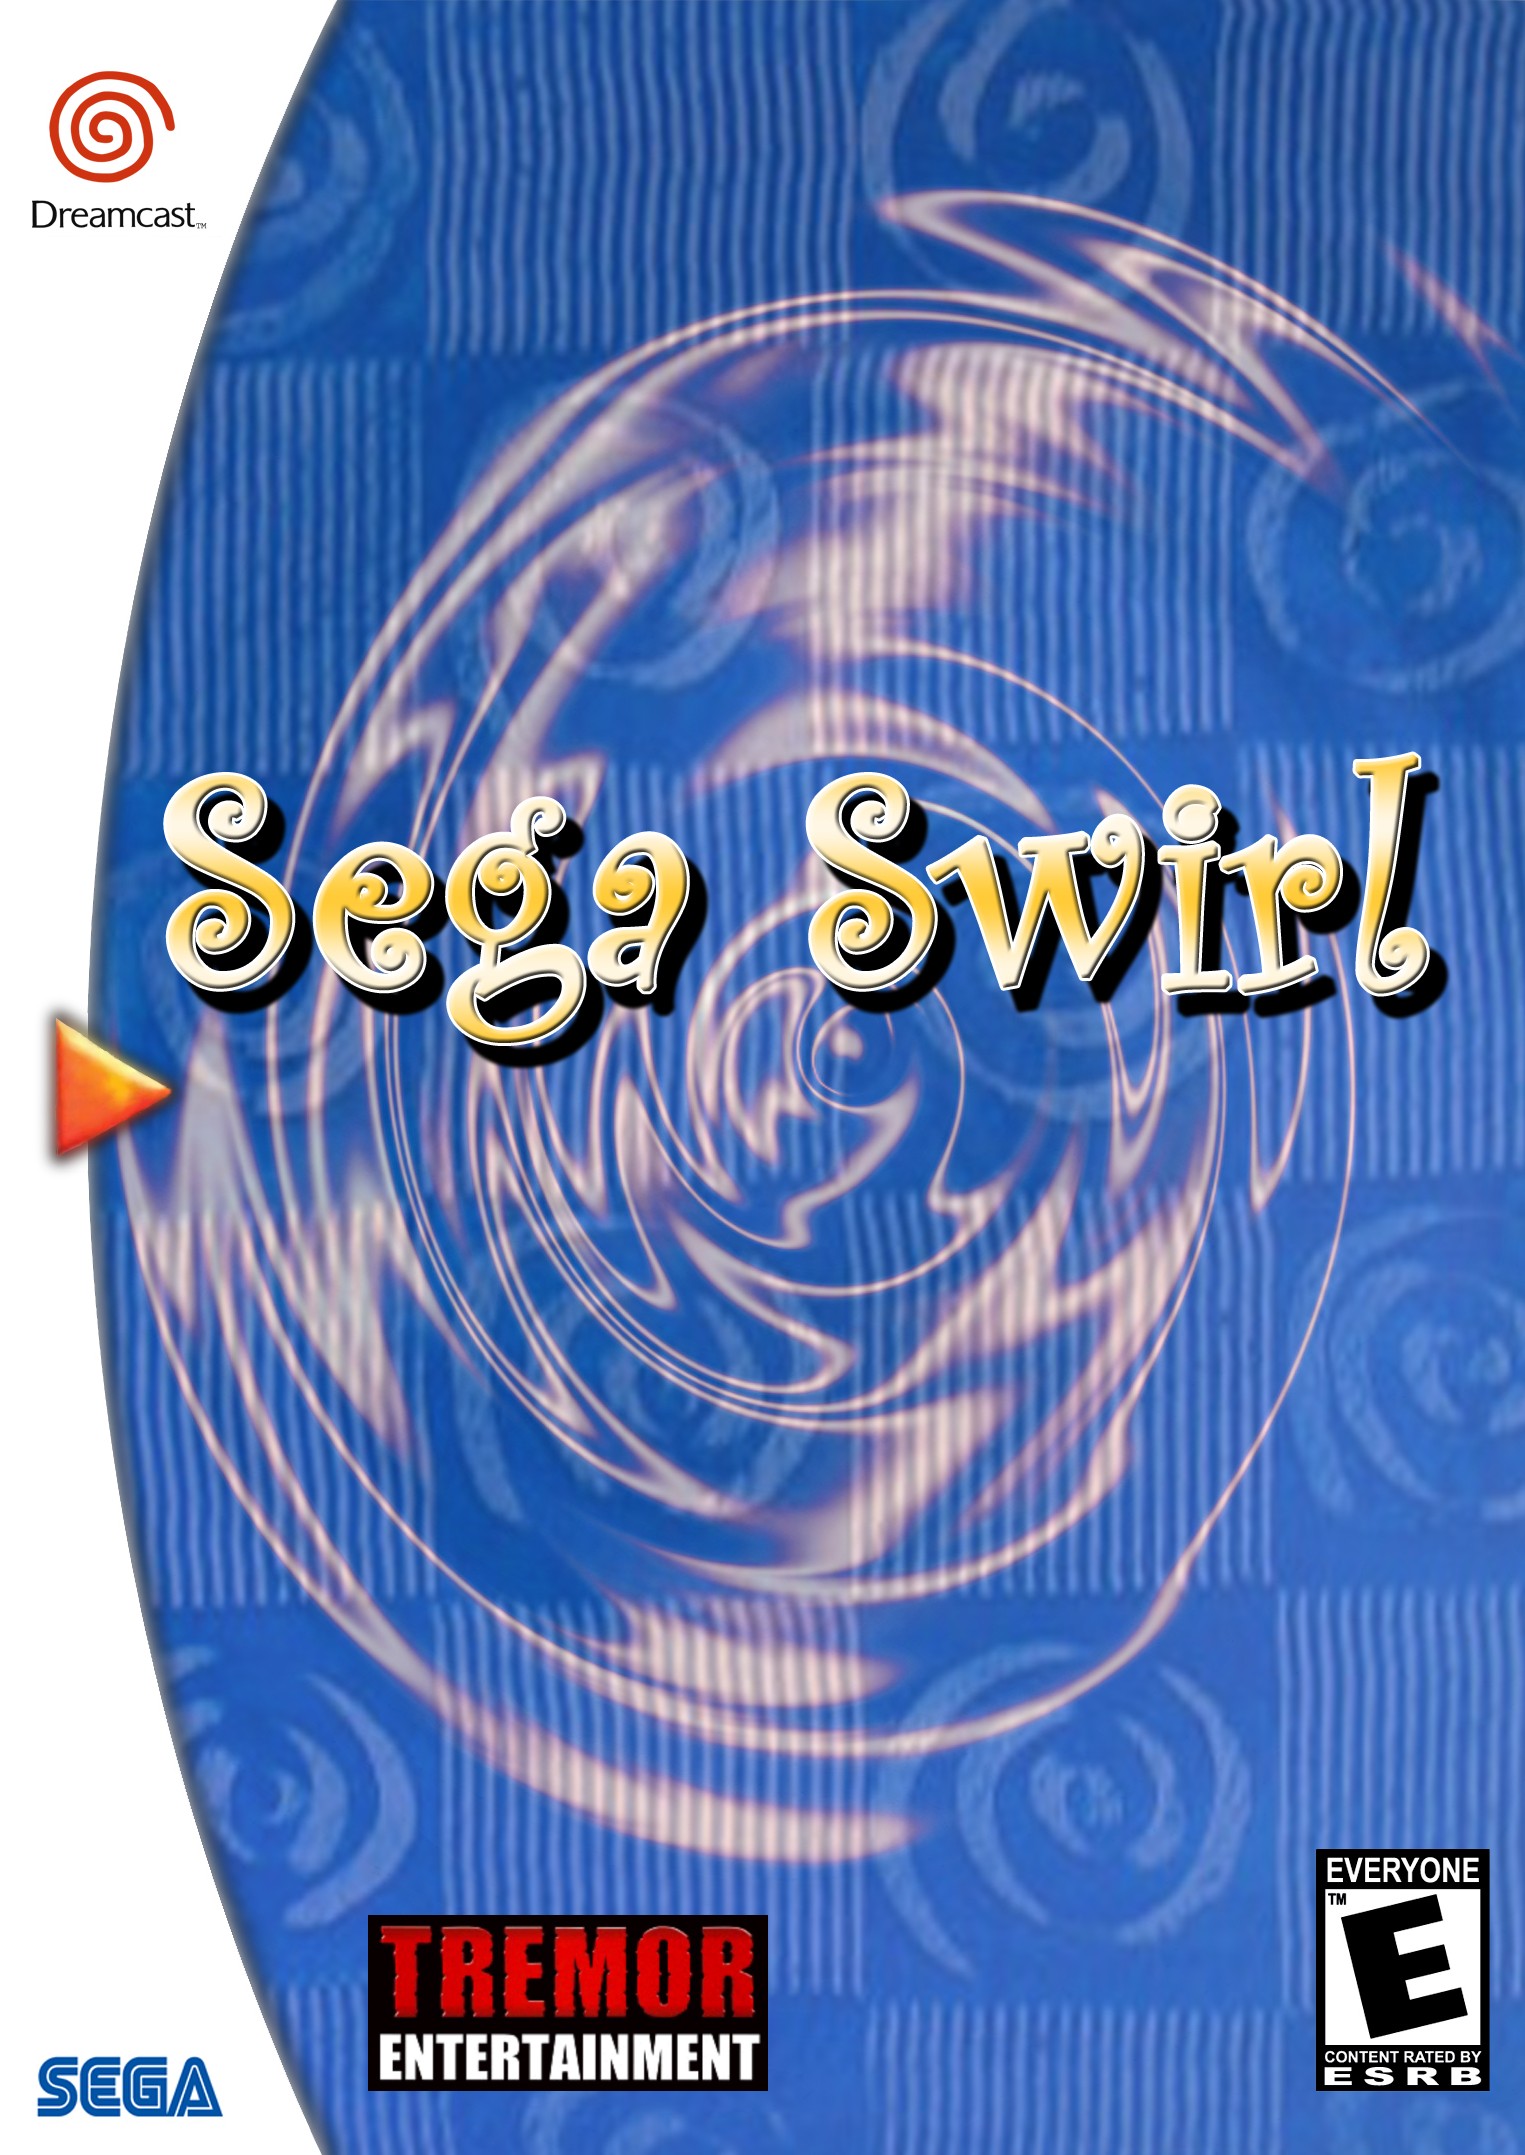 'Sega Swirl'